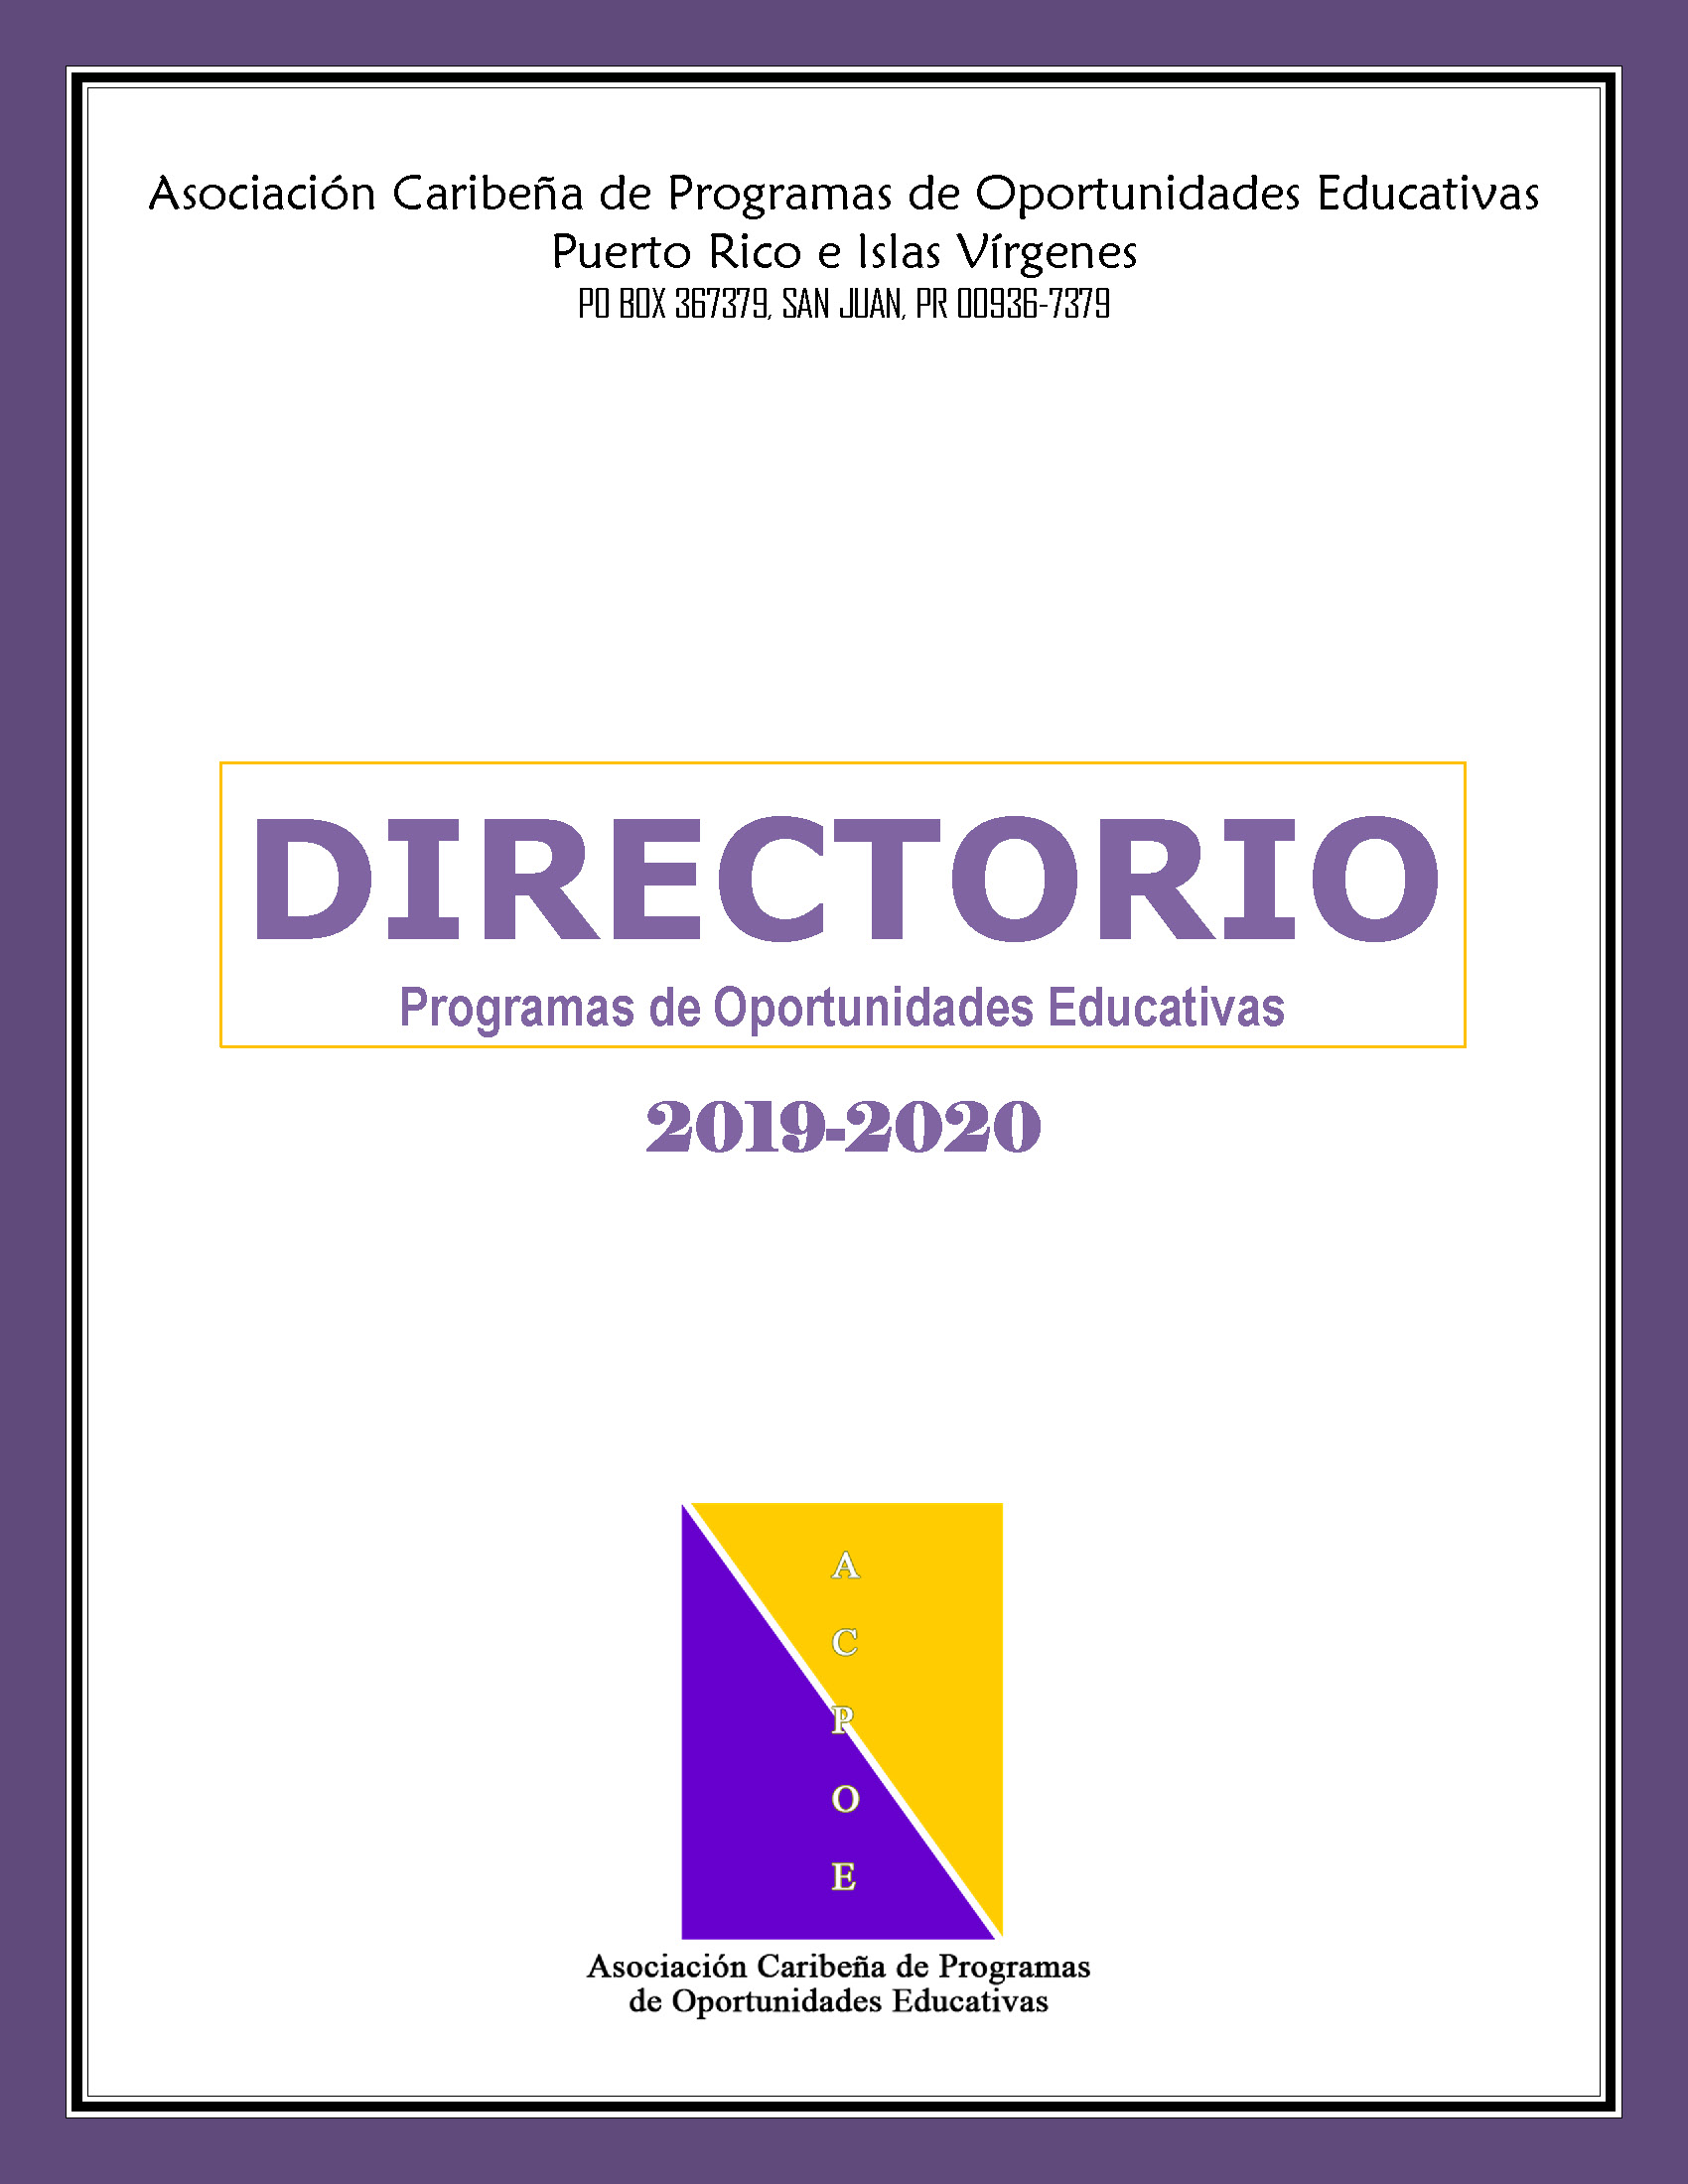 Directorio de Programas 2019 - 2020